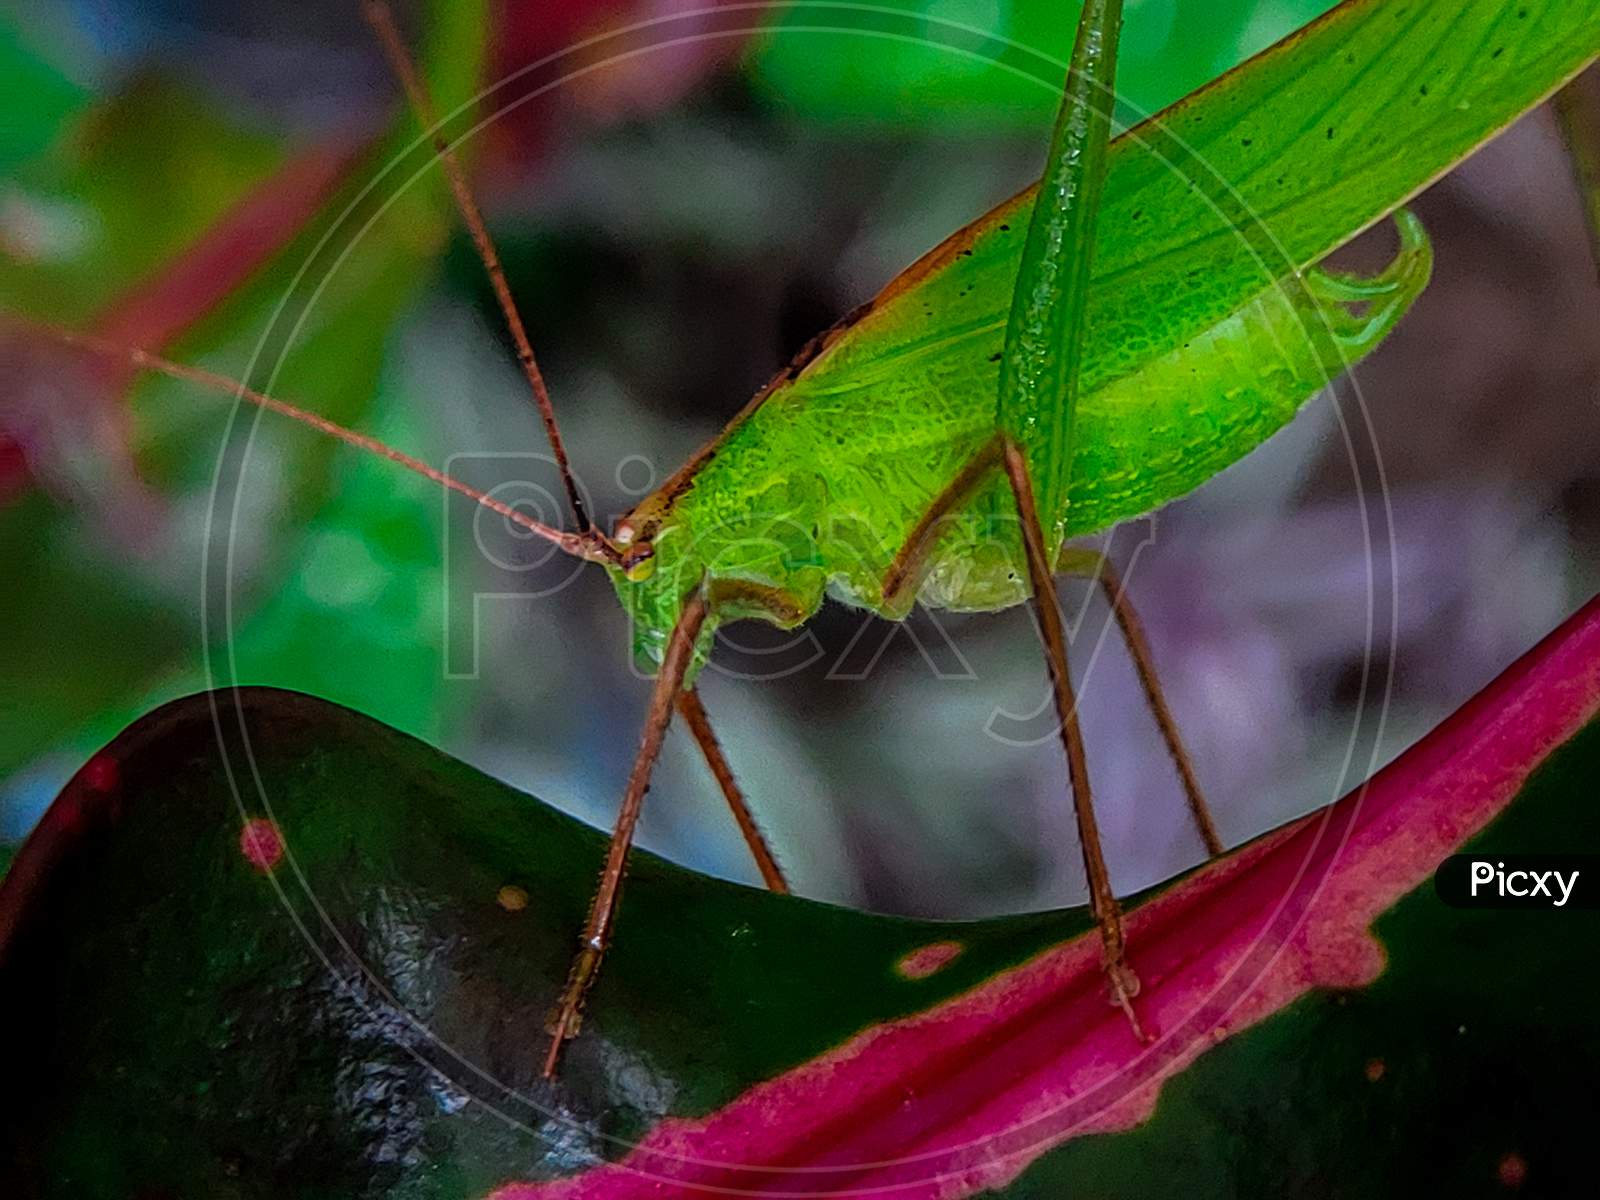 Beautiful closeup look of a grasshopper